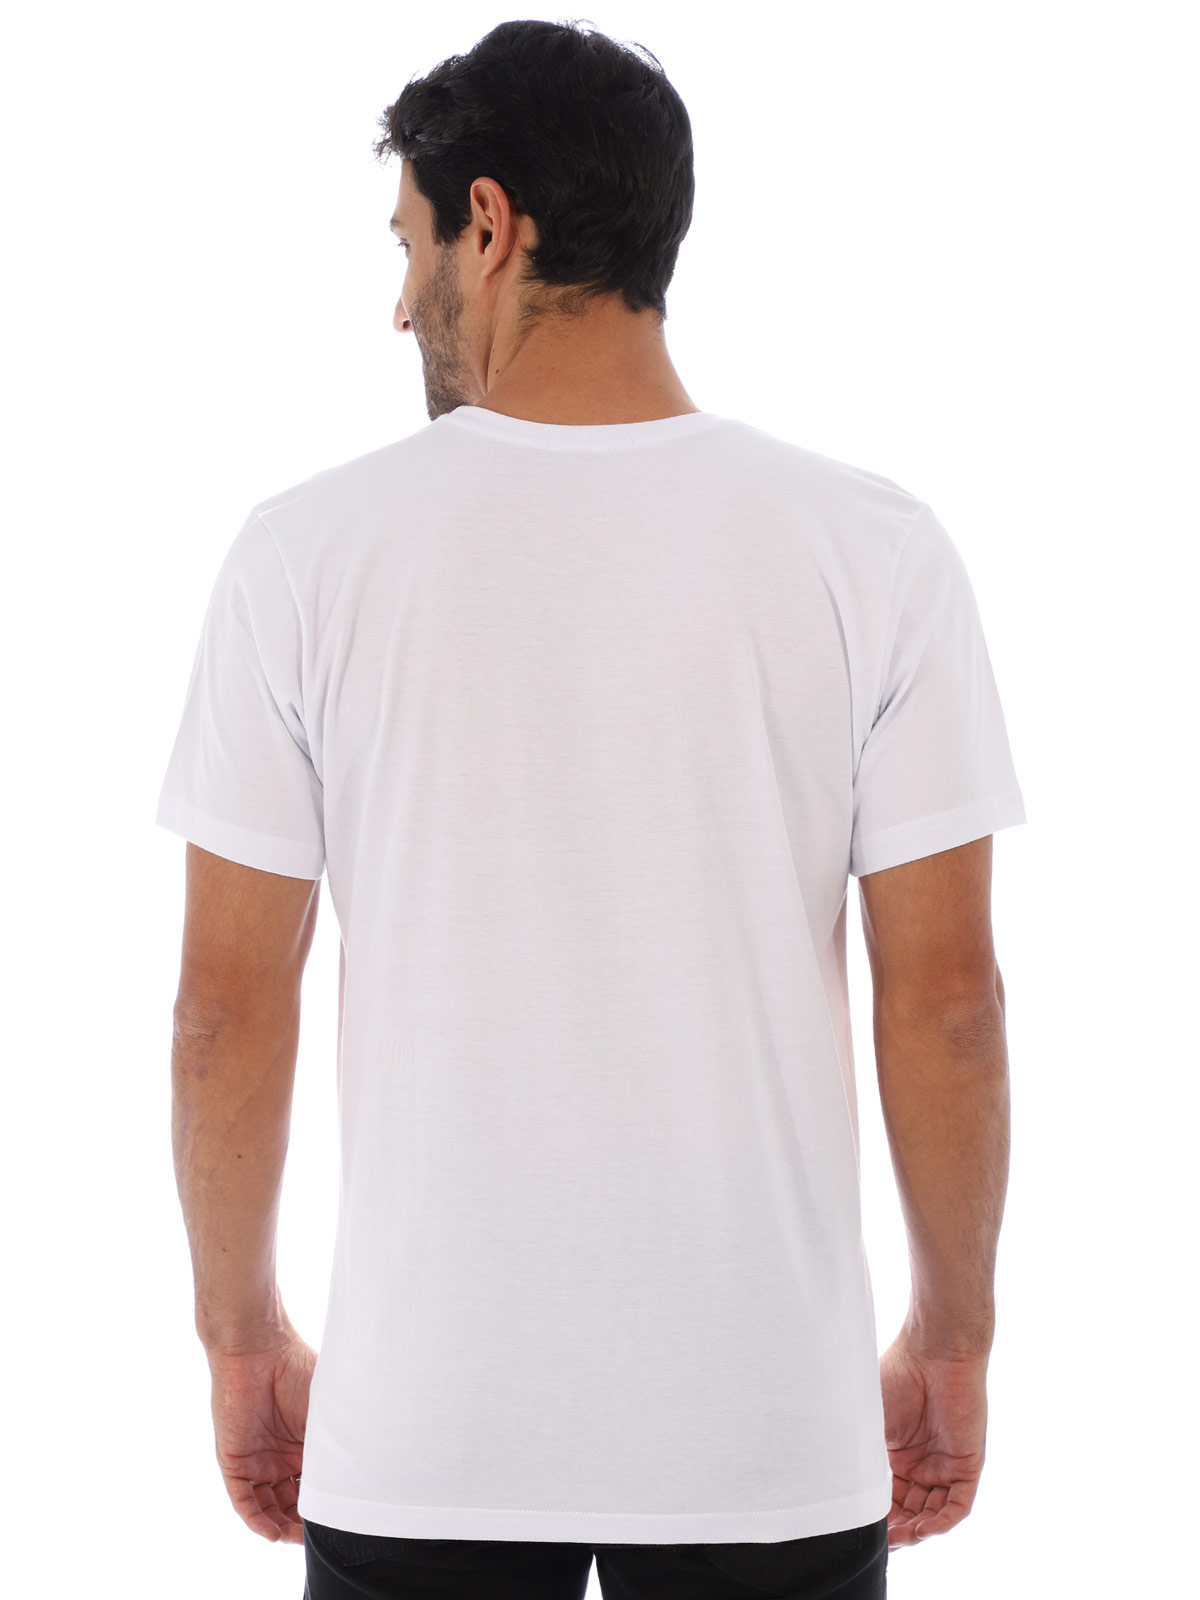 Camiseta Masculina Básica Algodão Estampa Microfone Branca